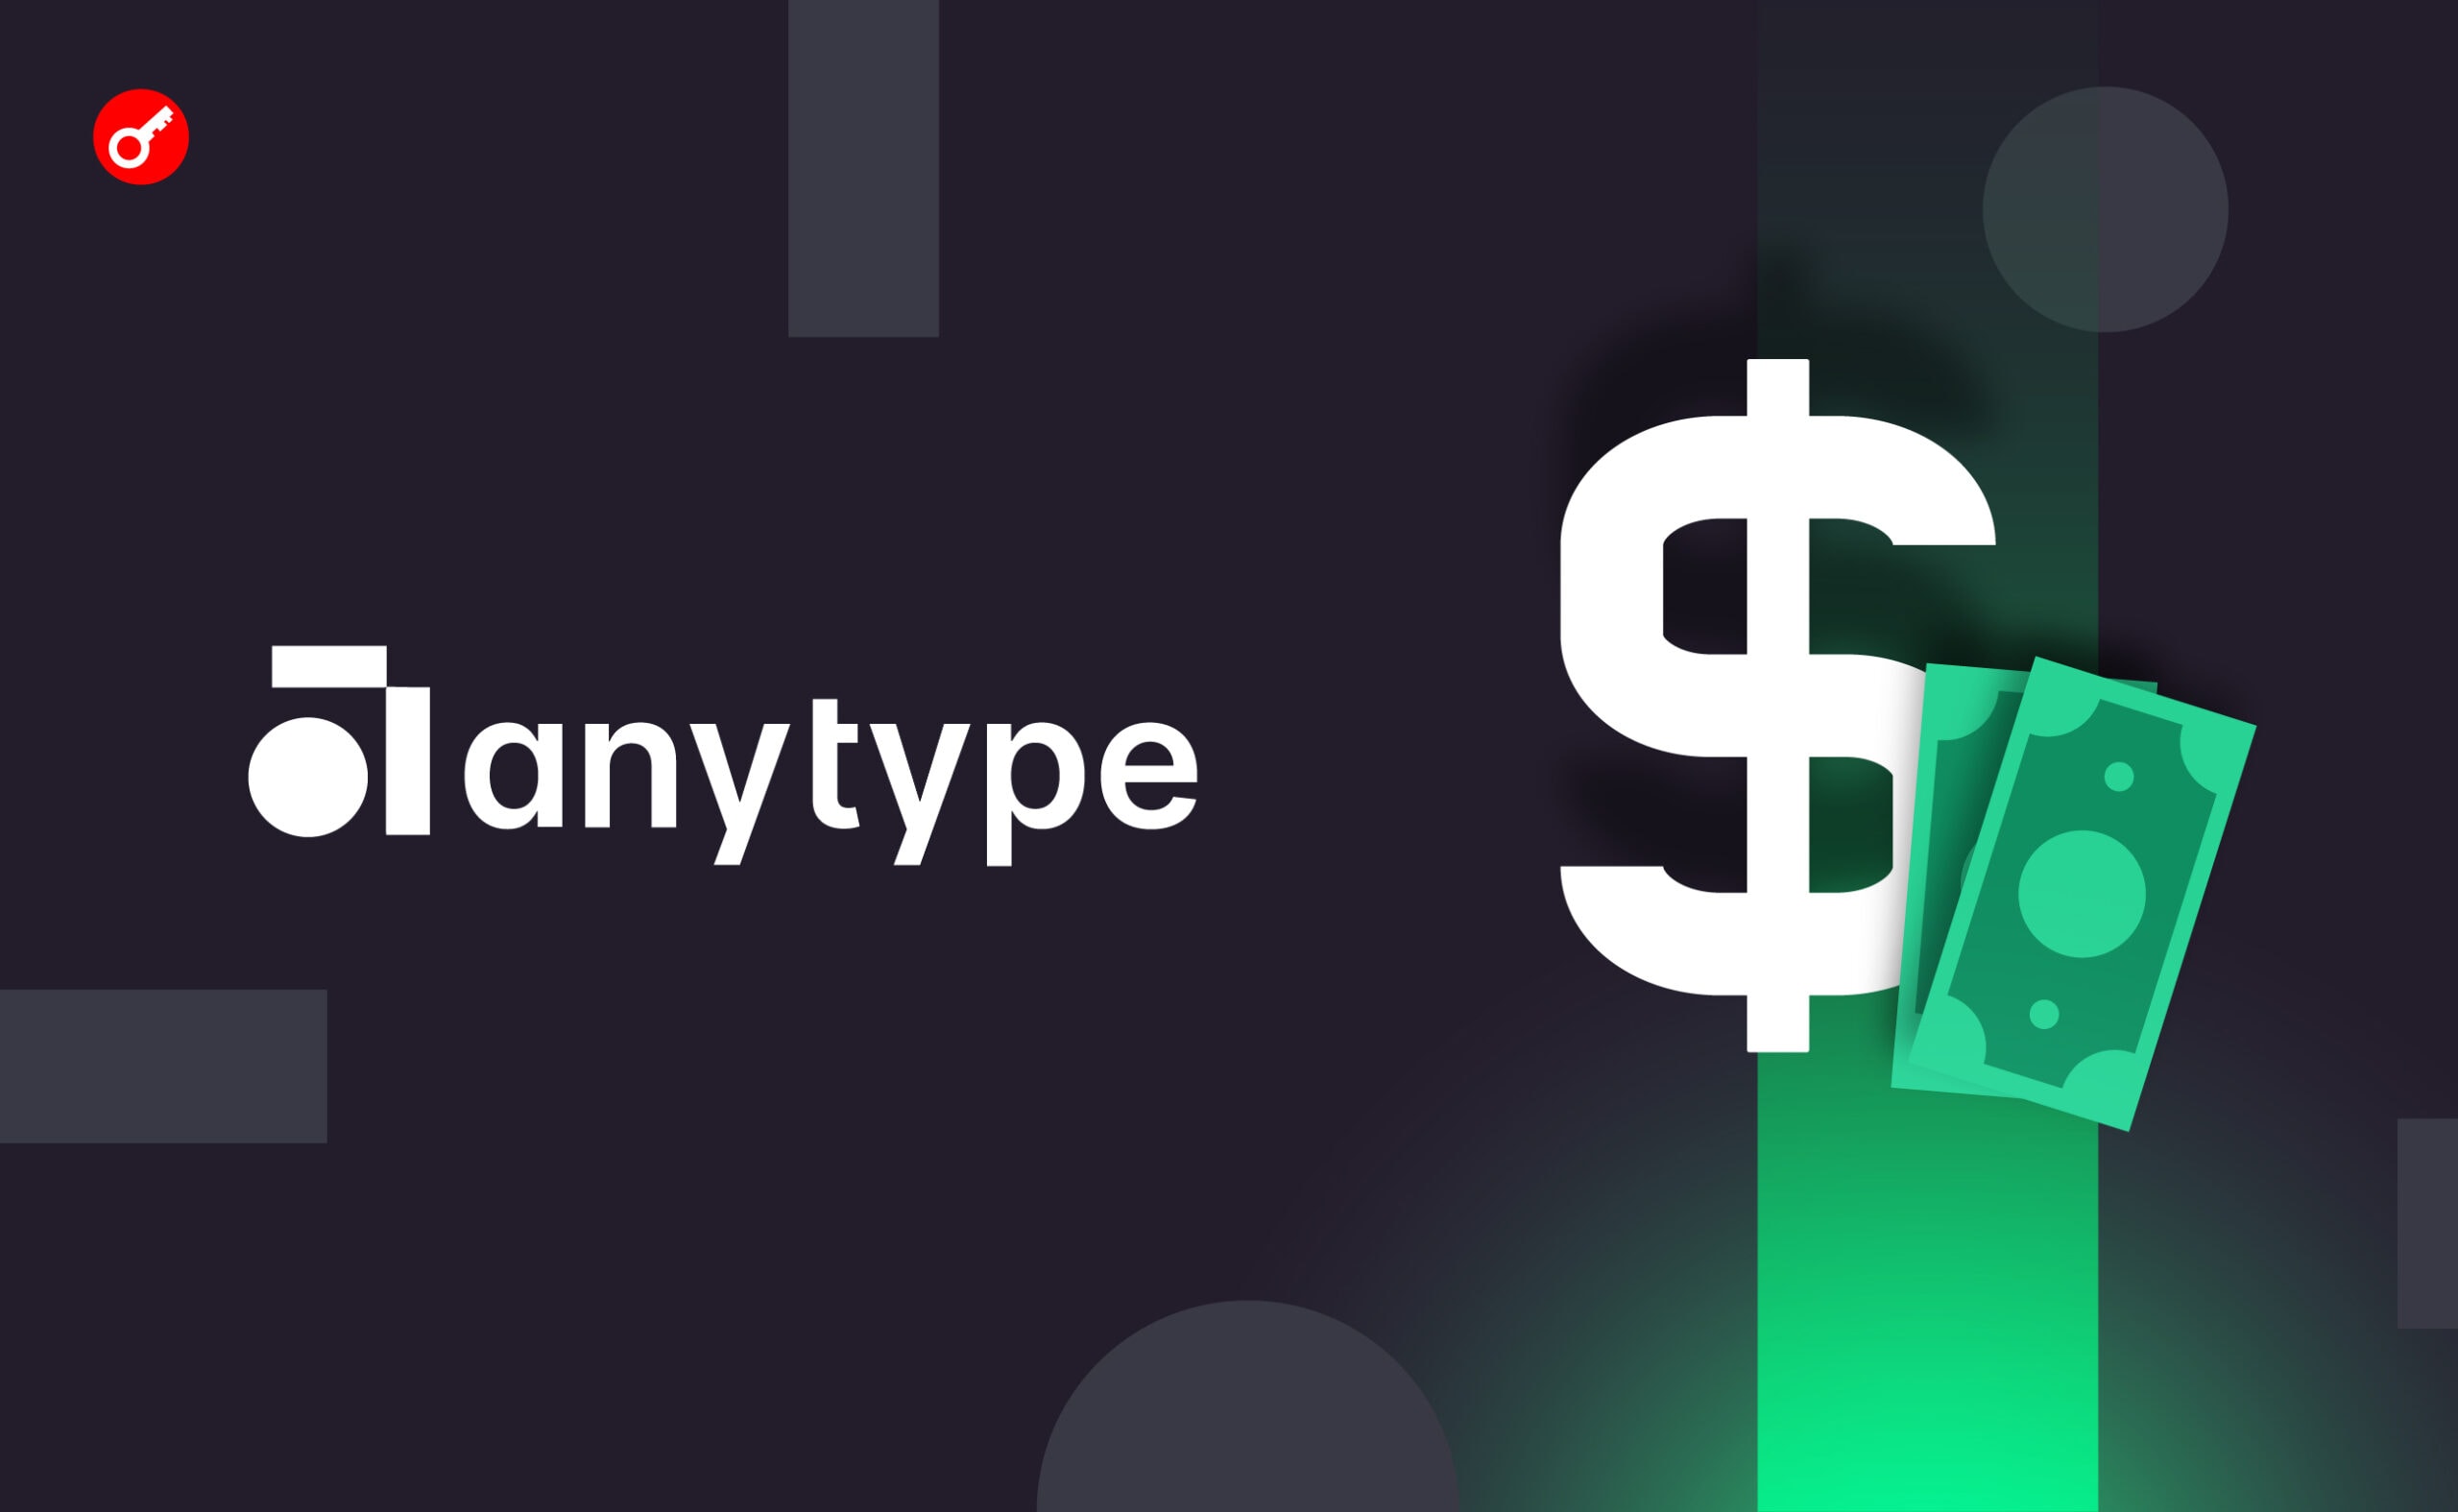 Anytype залучила $13,4 млн інвестицій. Головний колаж новини.